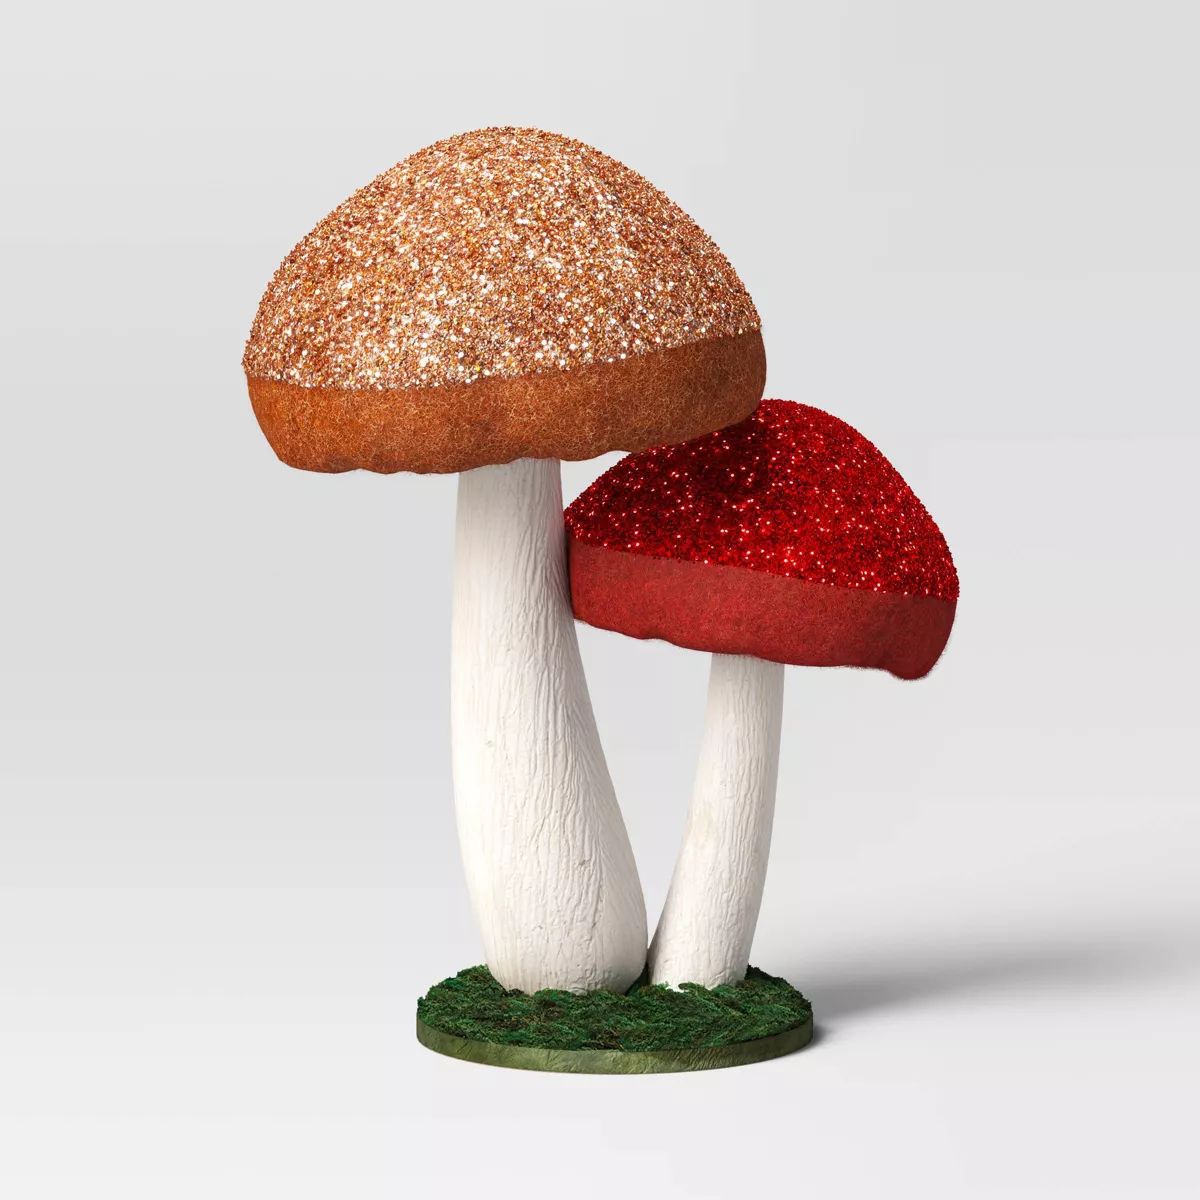 10.5" Wool Mushroom Christmas Figurine - Wondershop™ Brown/Red | Target